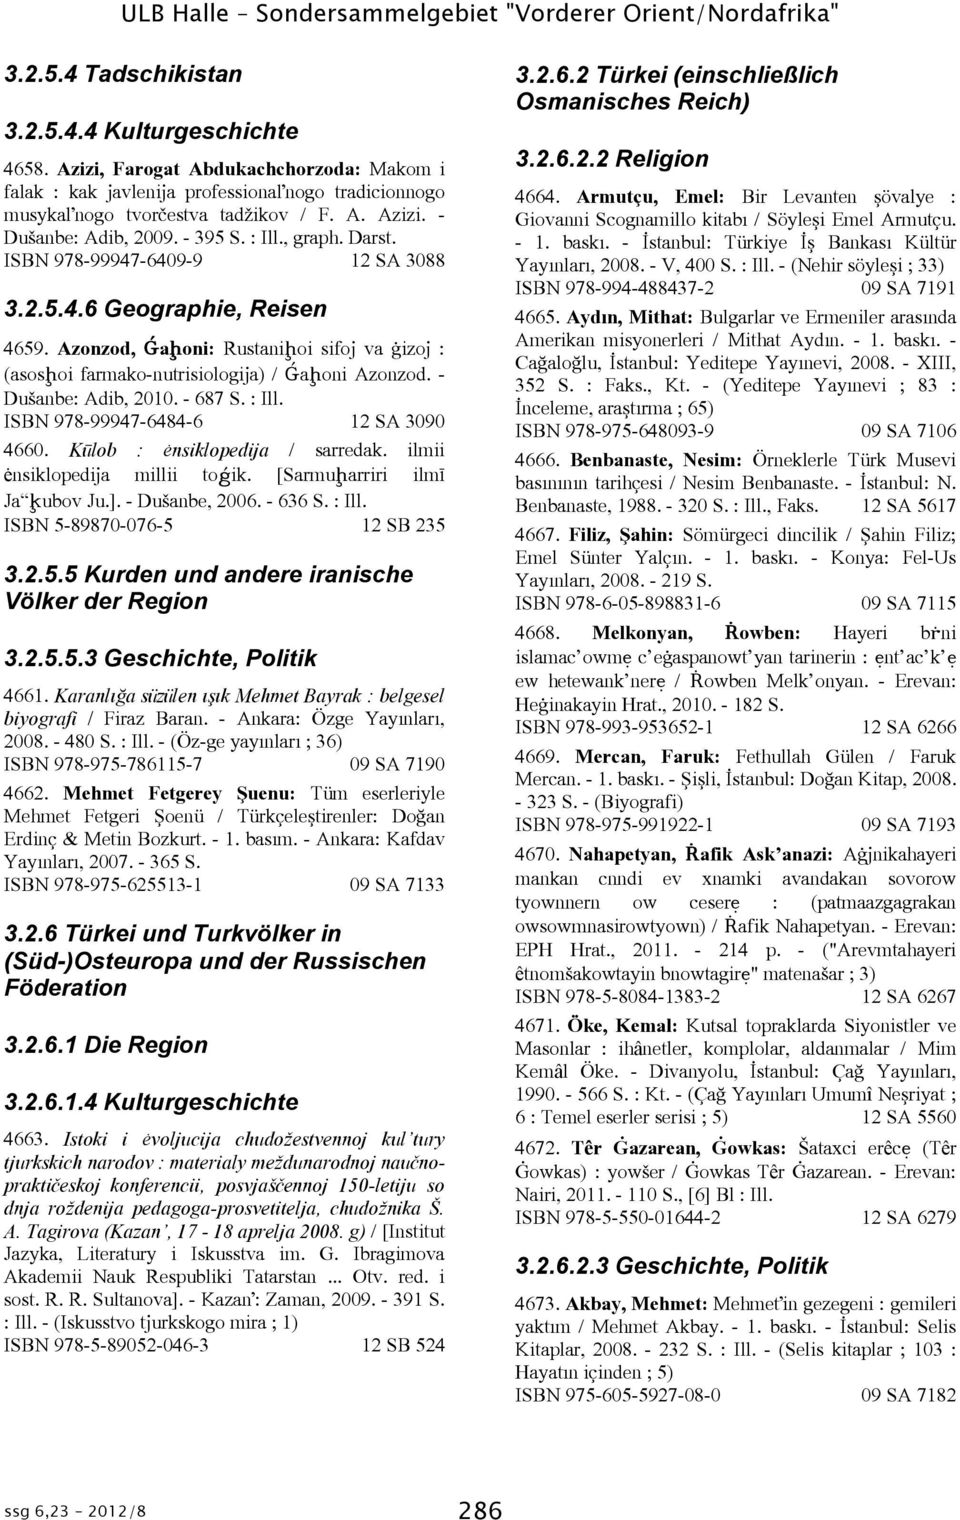 ISBN 978-99947-6409-9 12 SA 3088 3.2.5.4.6 Geographie, Reisen 4659. Azonzod, Ǵaḩoni: Rustaniḩoi sifoj va èizoj : (asosḩoi farmako-nutrisiologija) / Ǵaḩoni Azonzod. - Dušanbe: Adib, 2010. - 687 S.